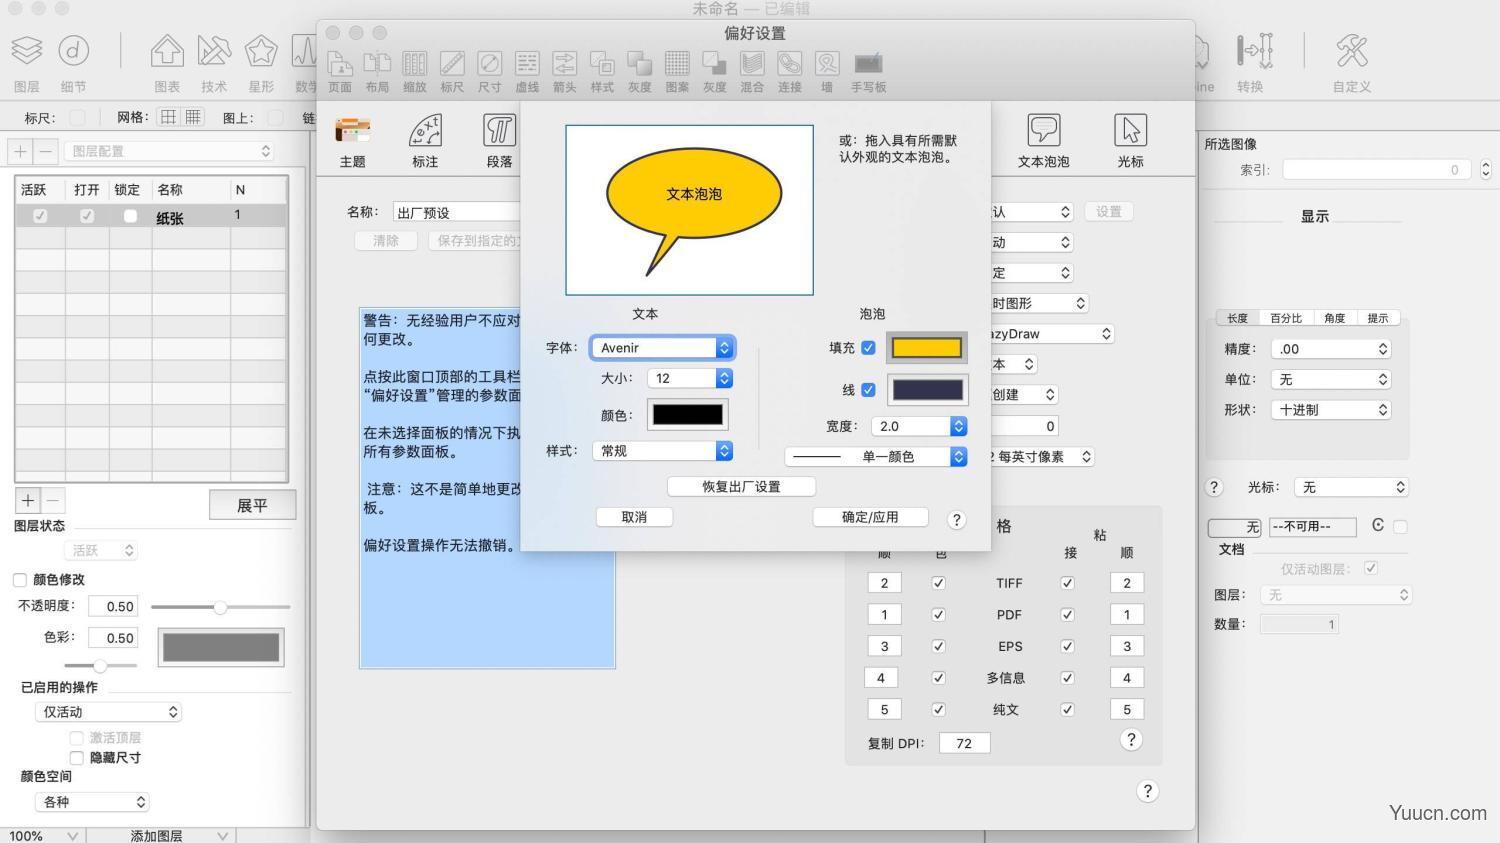 苹果矢量图绘制软件 EazyDraw mac v10.7.1 中文一键安装破解版